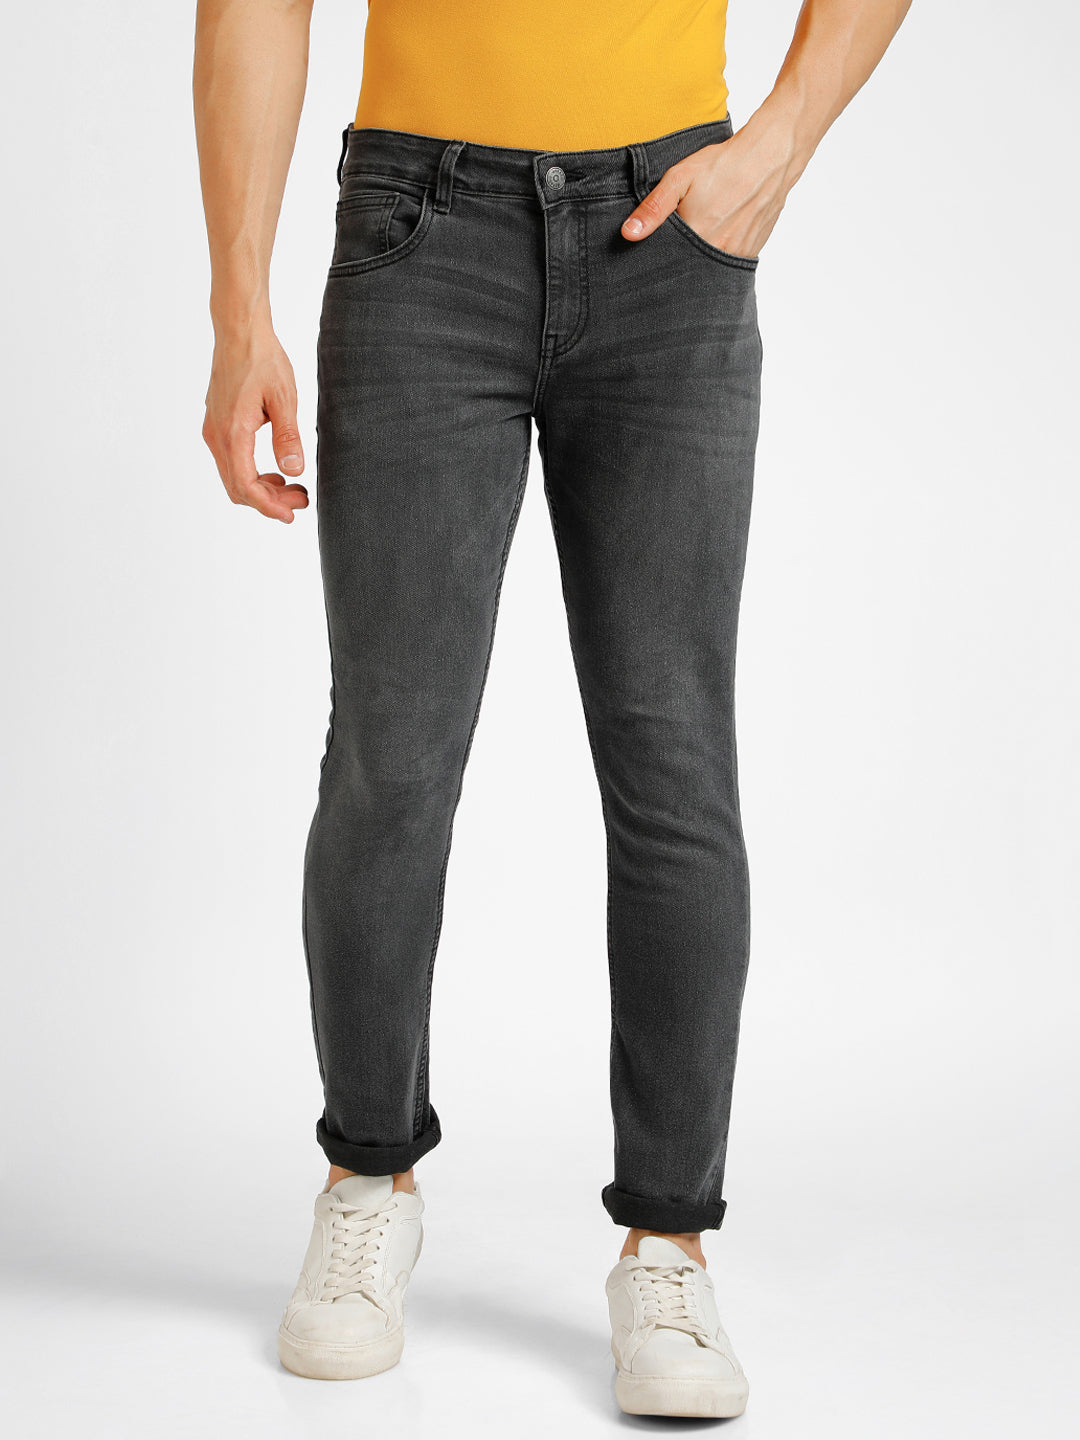 Men's Carbon Grey Regular Fit Washed Jeans Stretchable